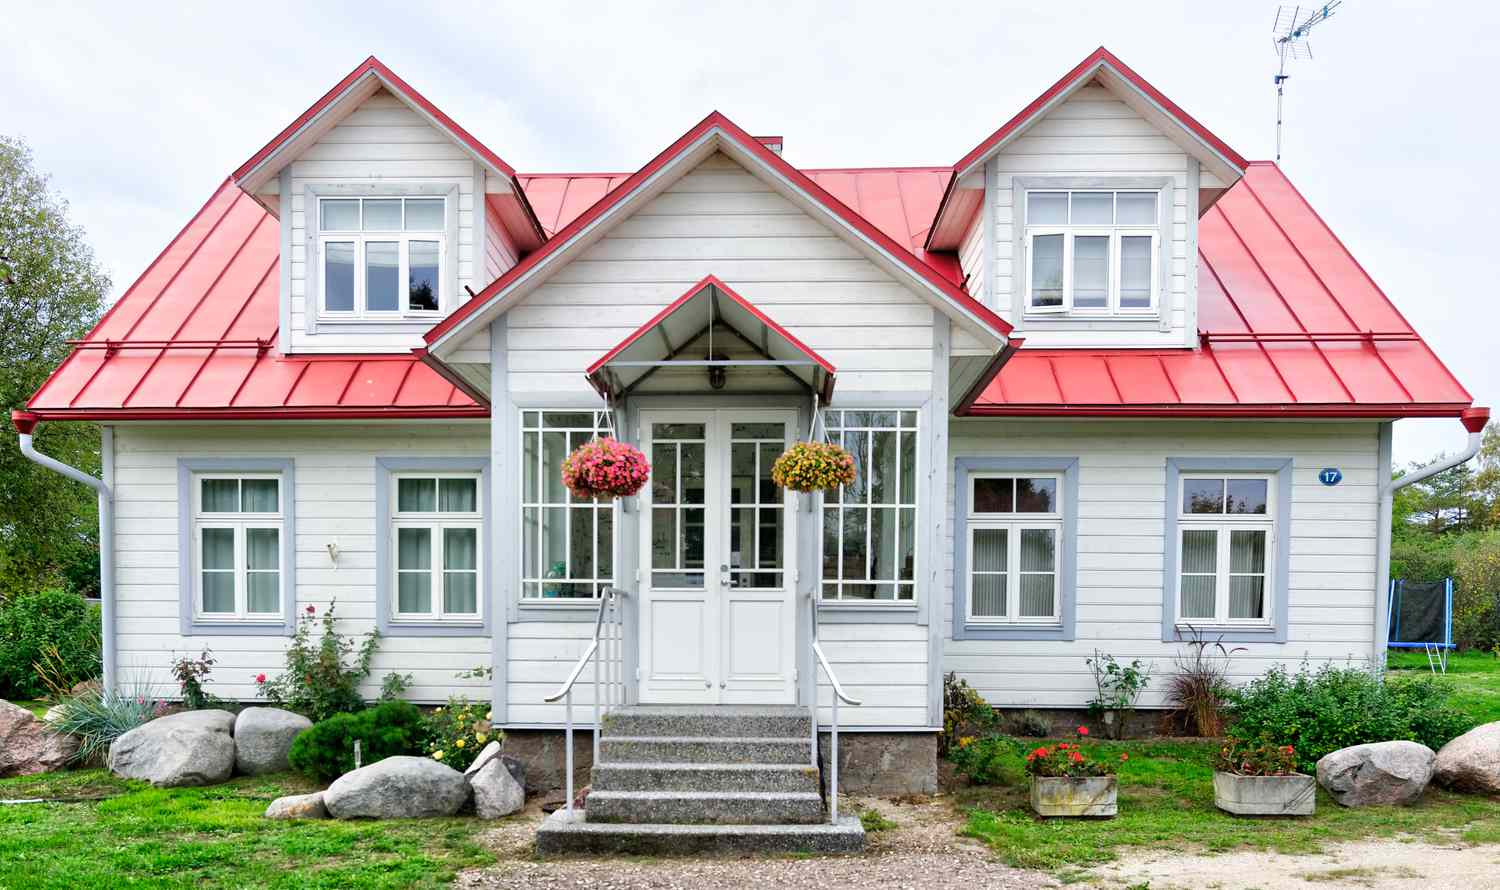 Casita con tejado rojo y bonita puerta de entrada